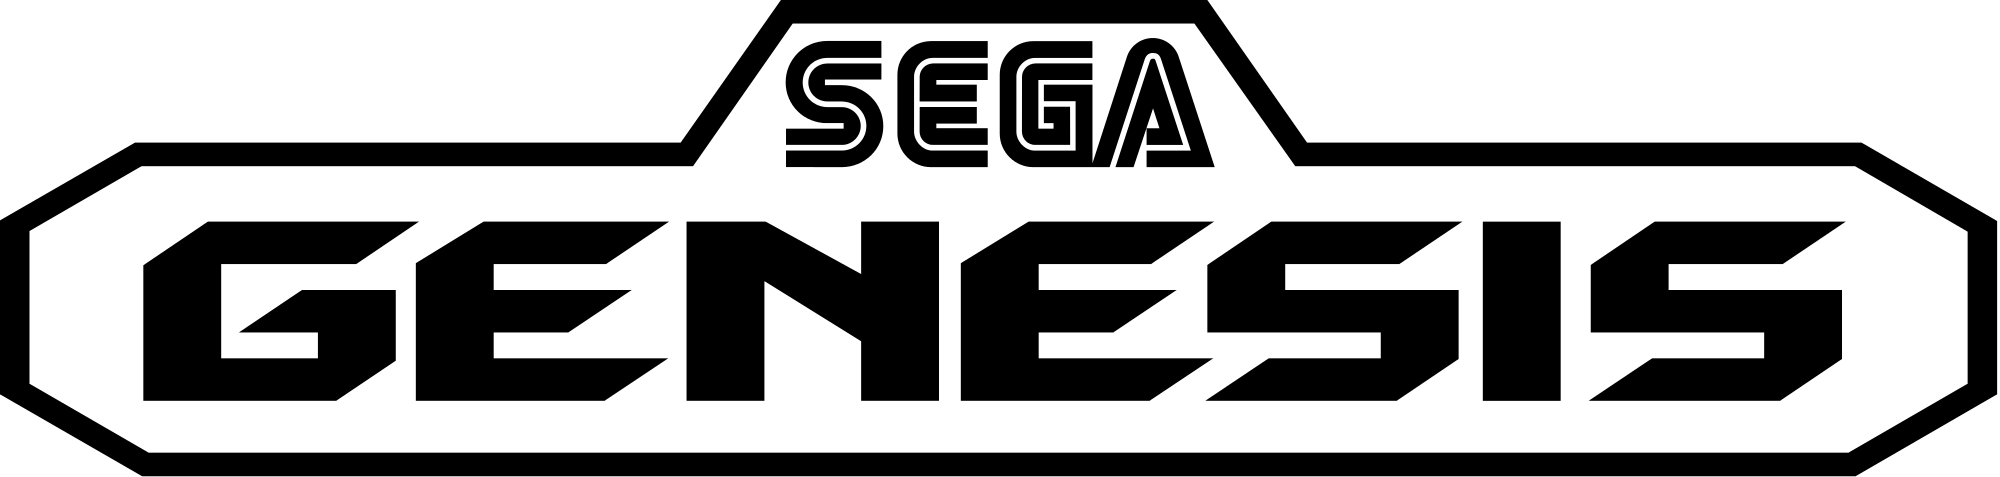 Sega Png Hdpng.com 2000 - Sega, Transparent background PNG HD thumbnail